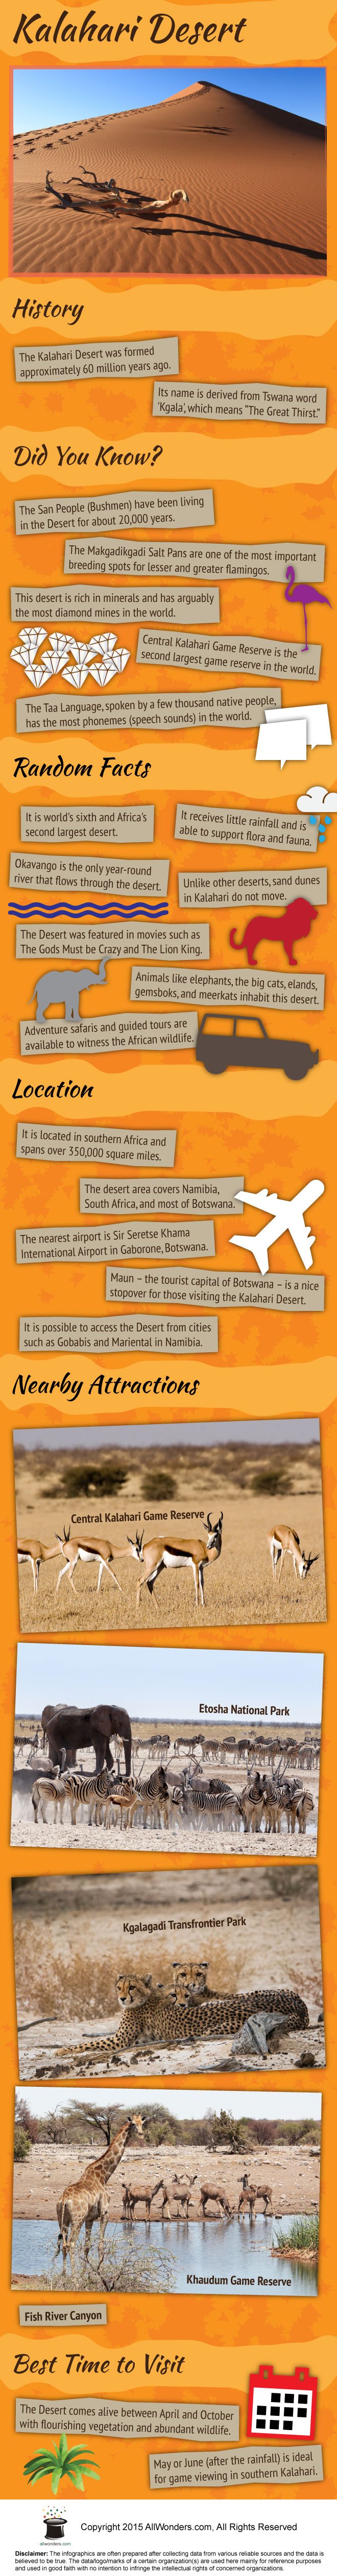 Kalahari Desert Infographic